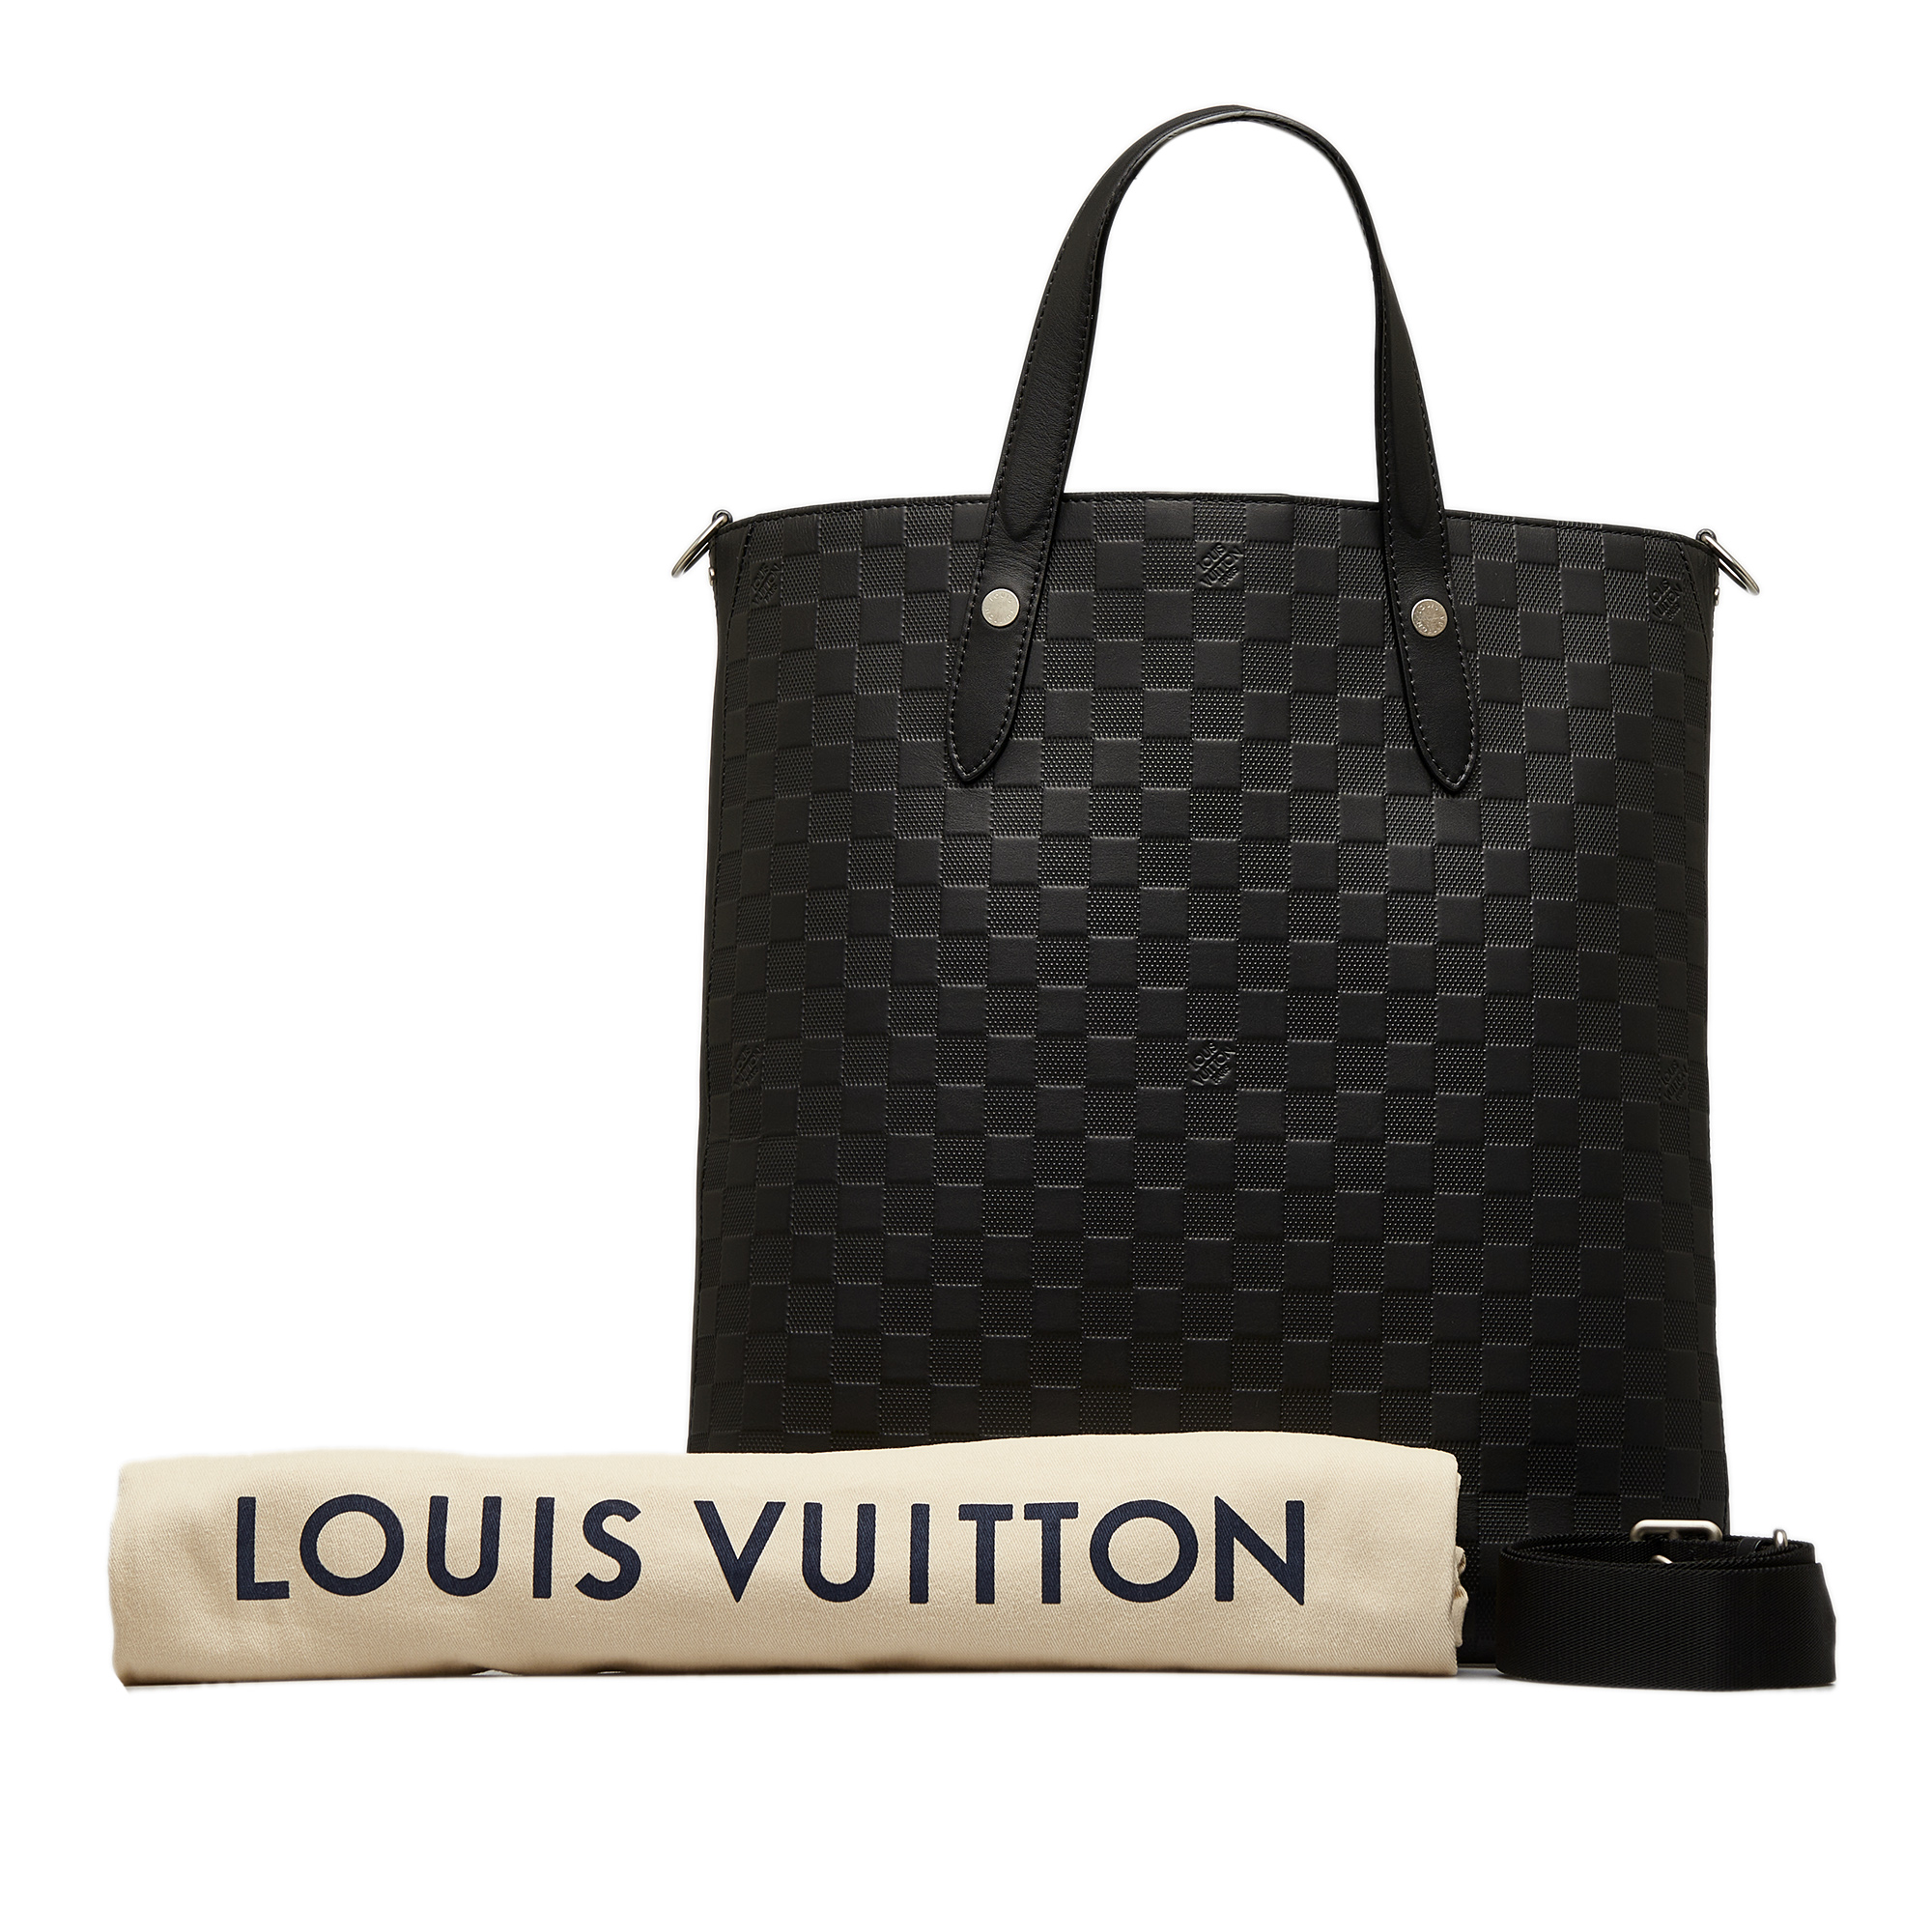 Louis Vuitton Black Damier Infini Apollo Tote